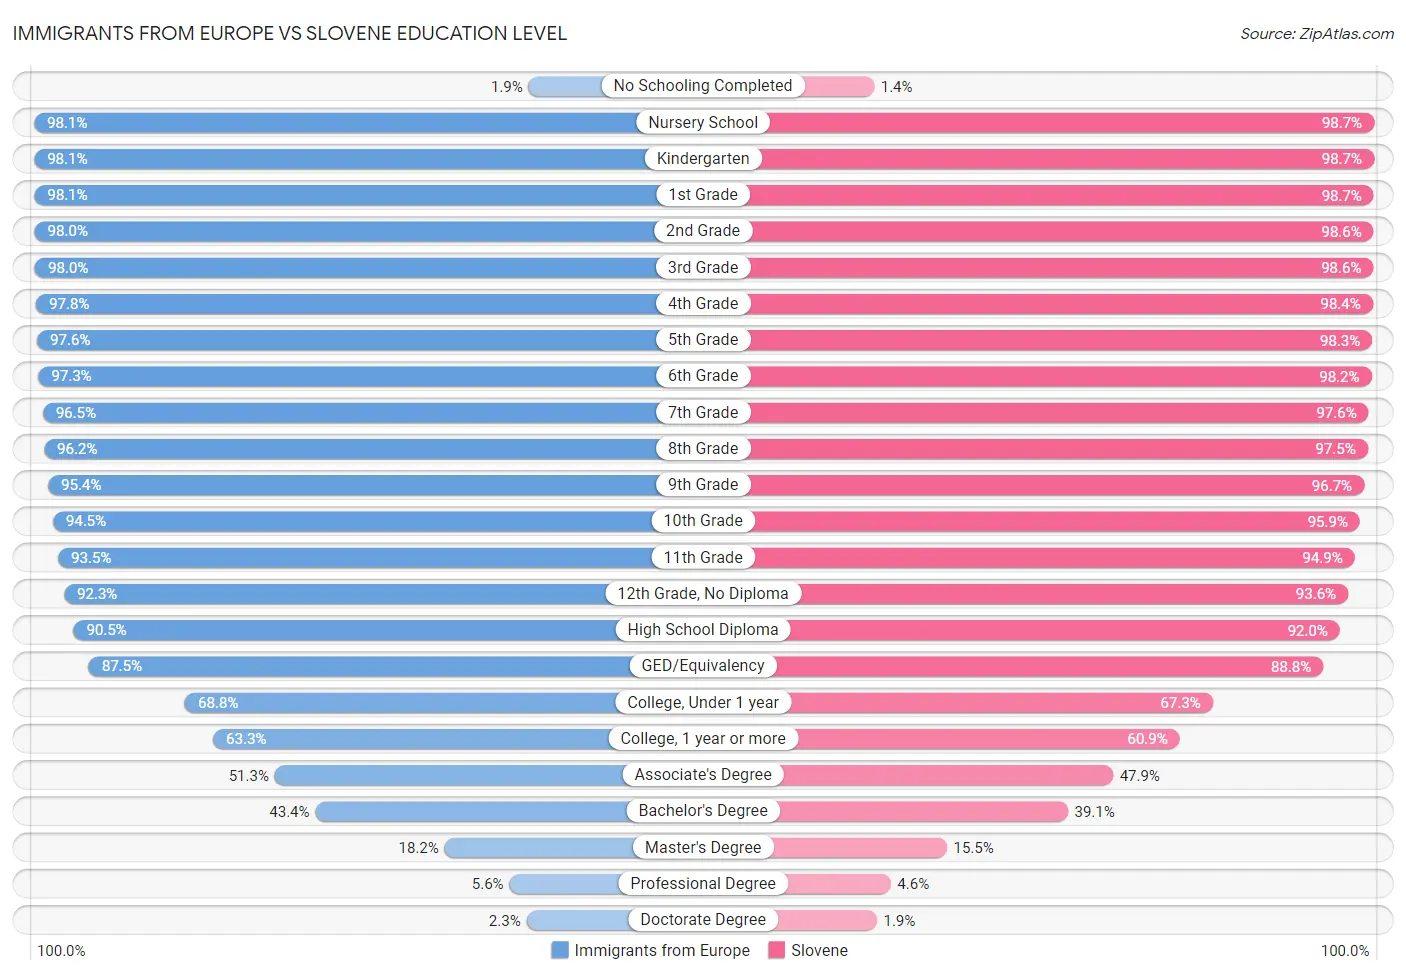 Immigrants from Europe vs Slovene Education Level